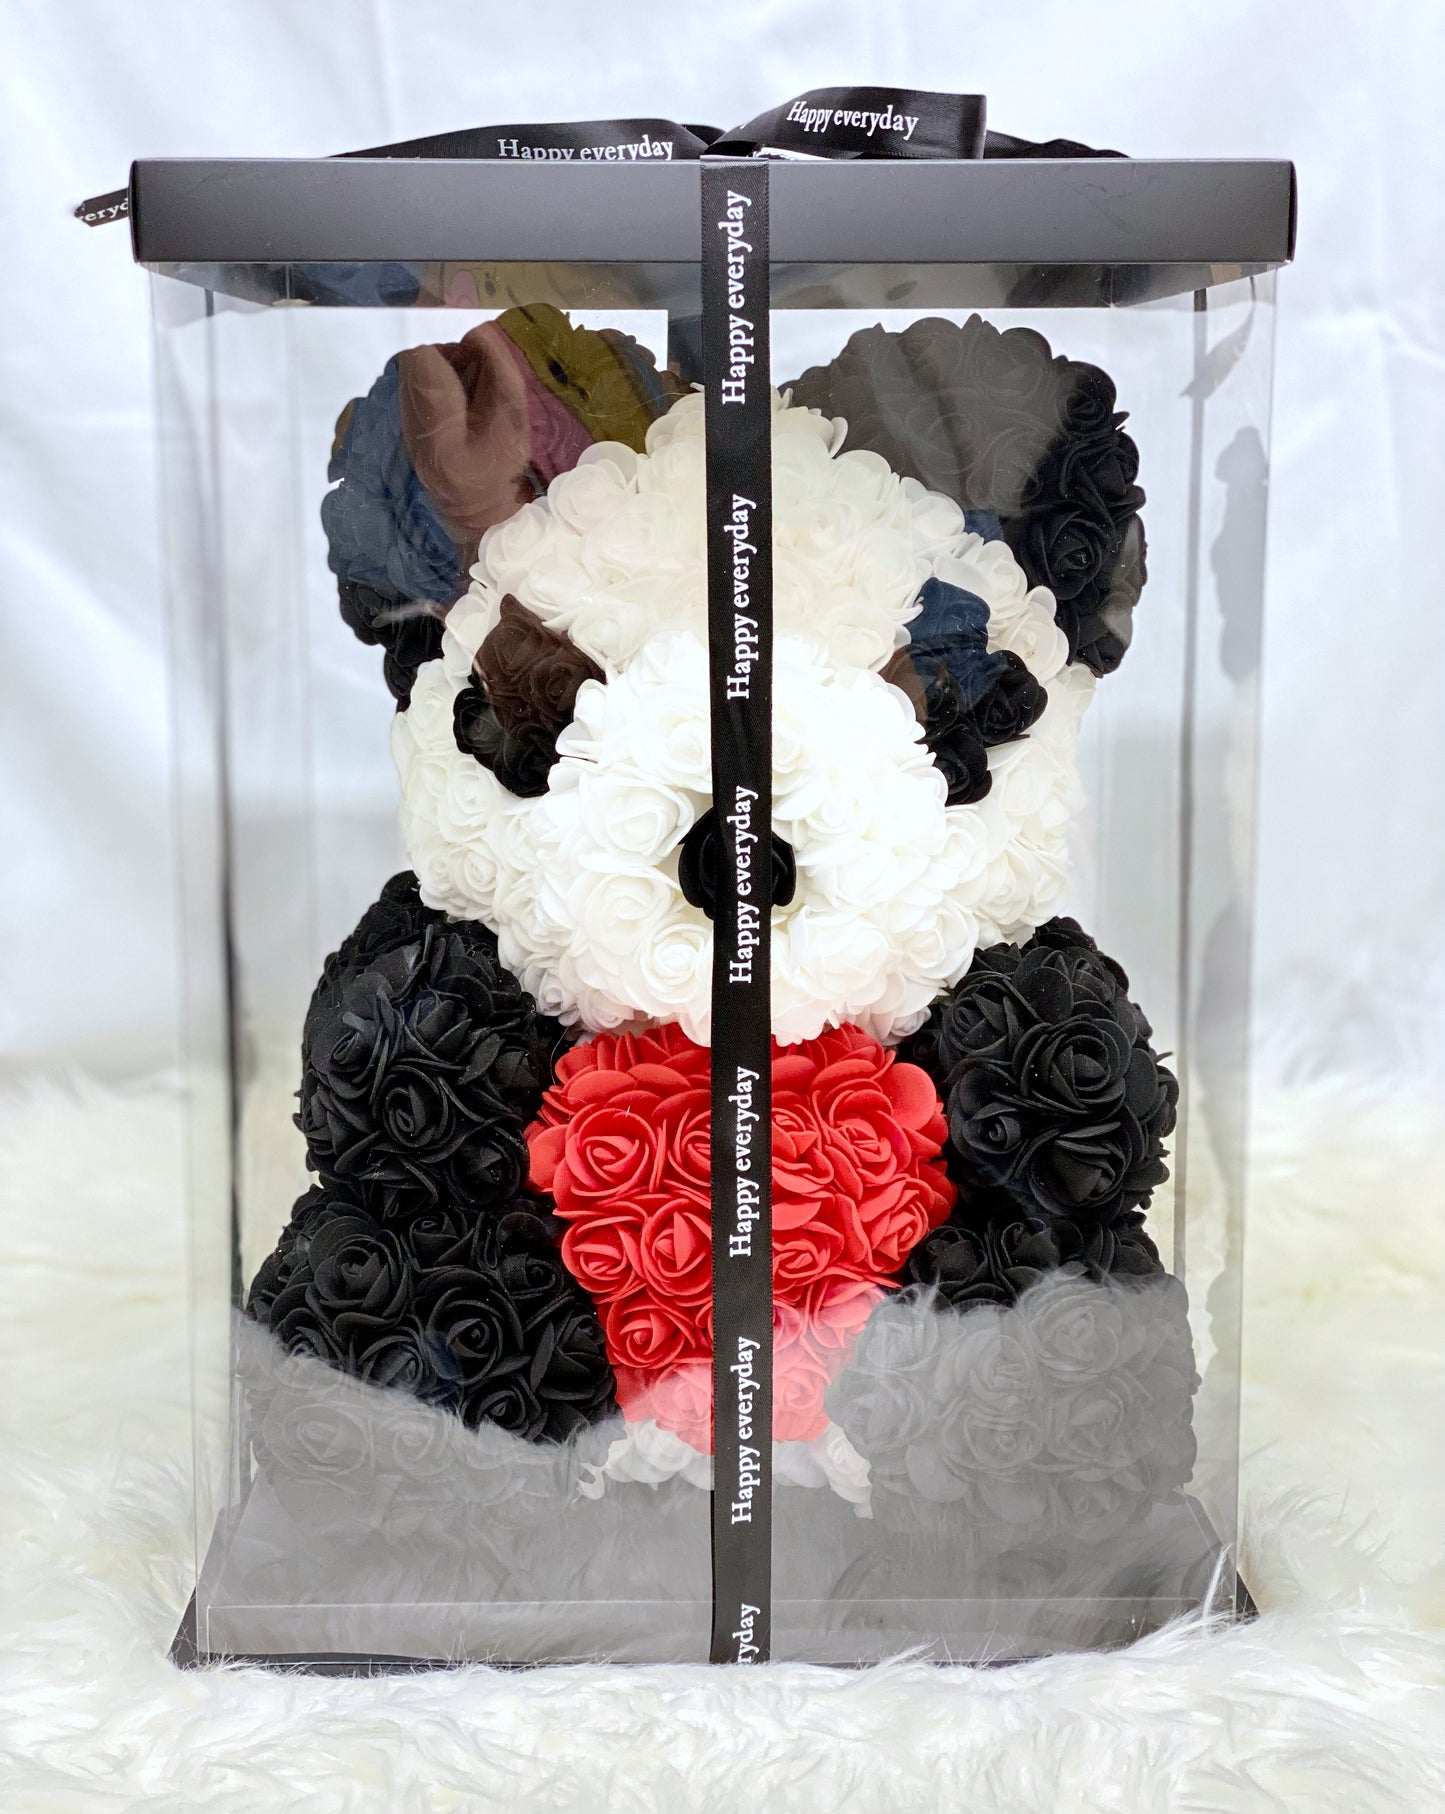 Rose Teddy Bear | Panda